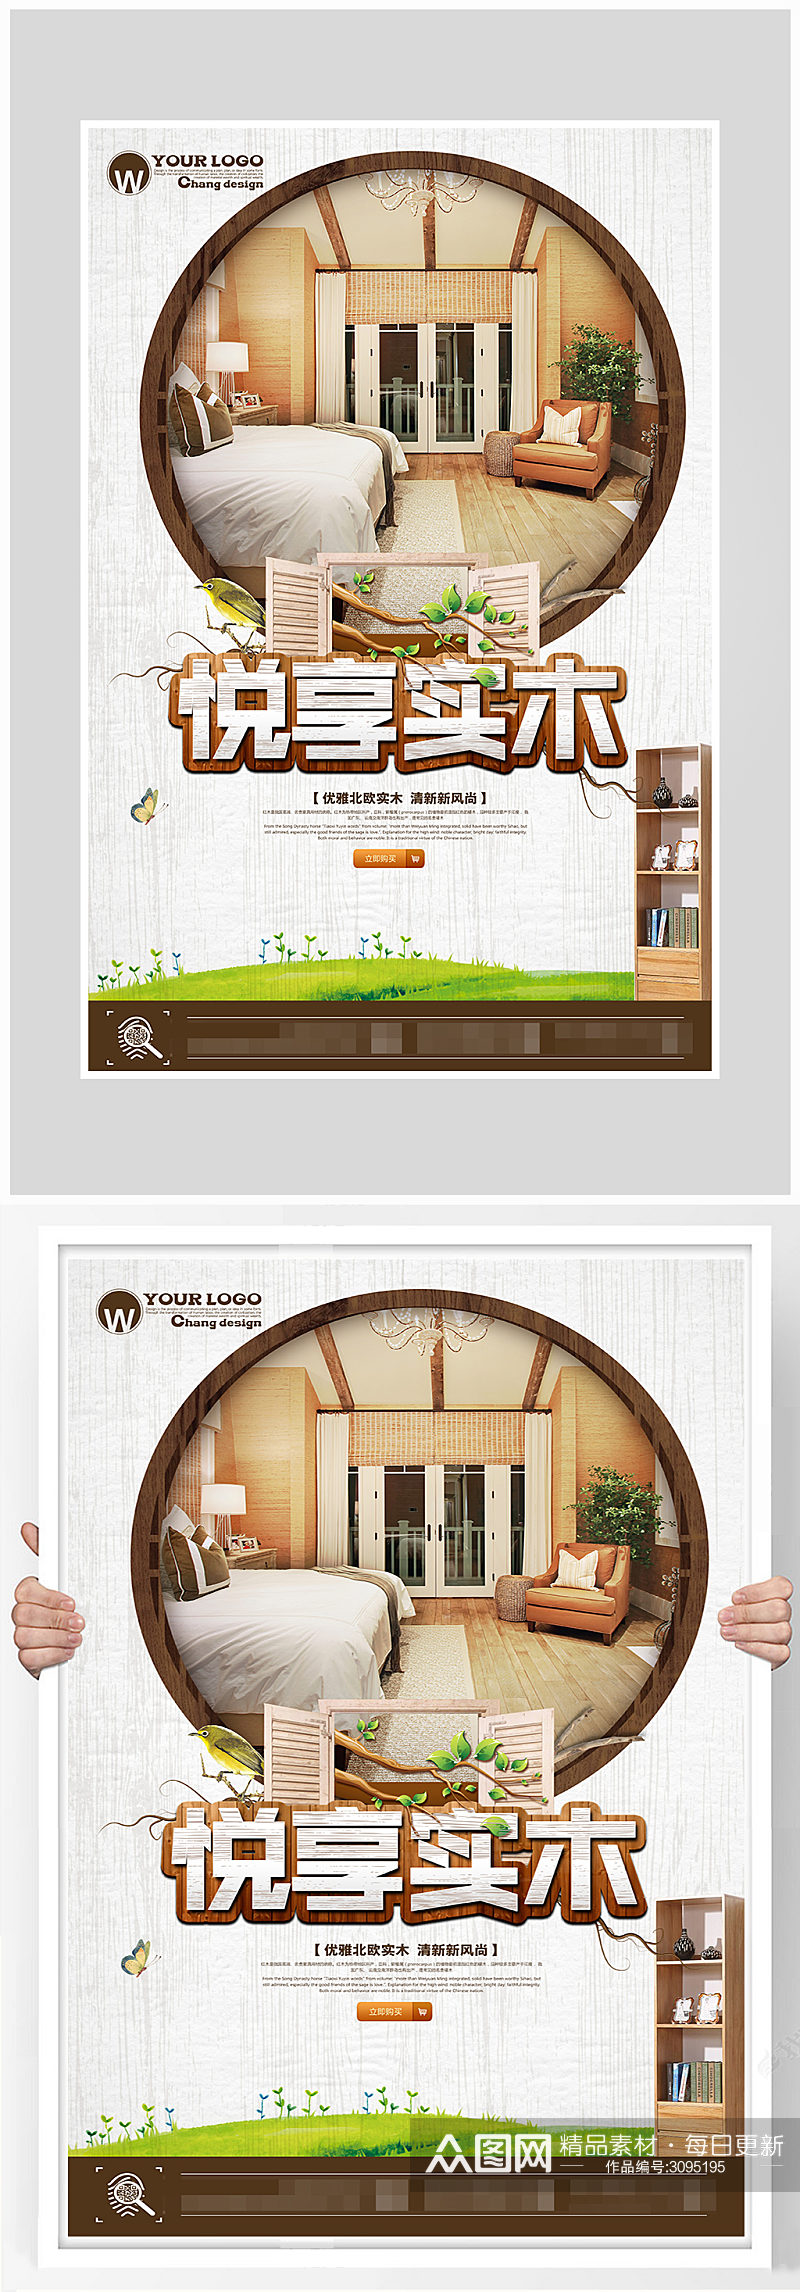 创意古风实木家具海报设计素材